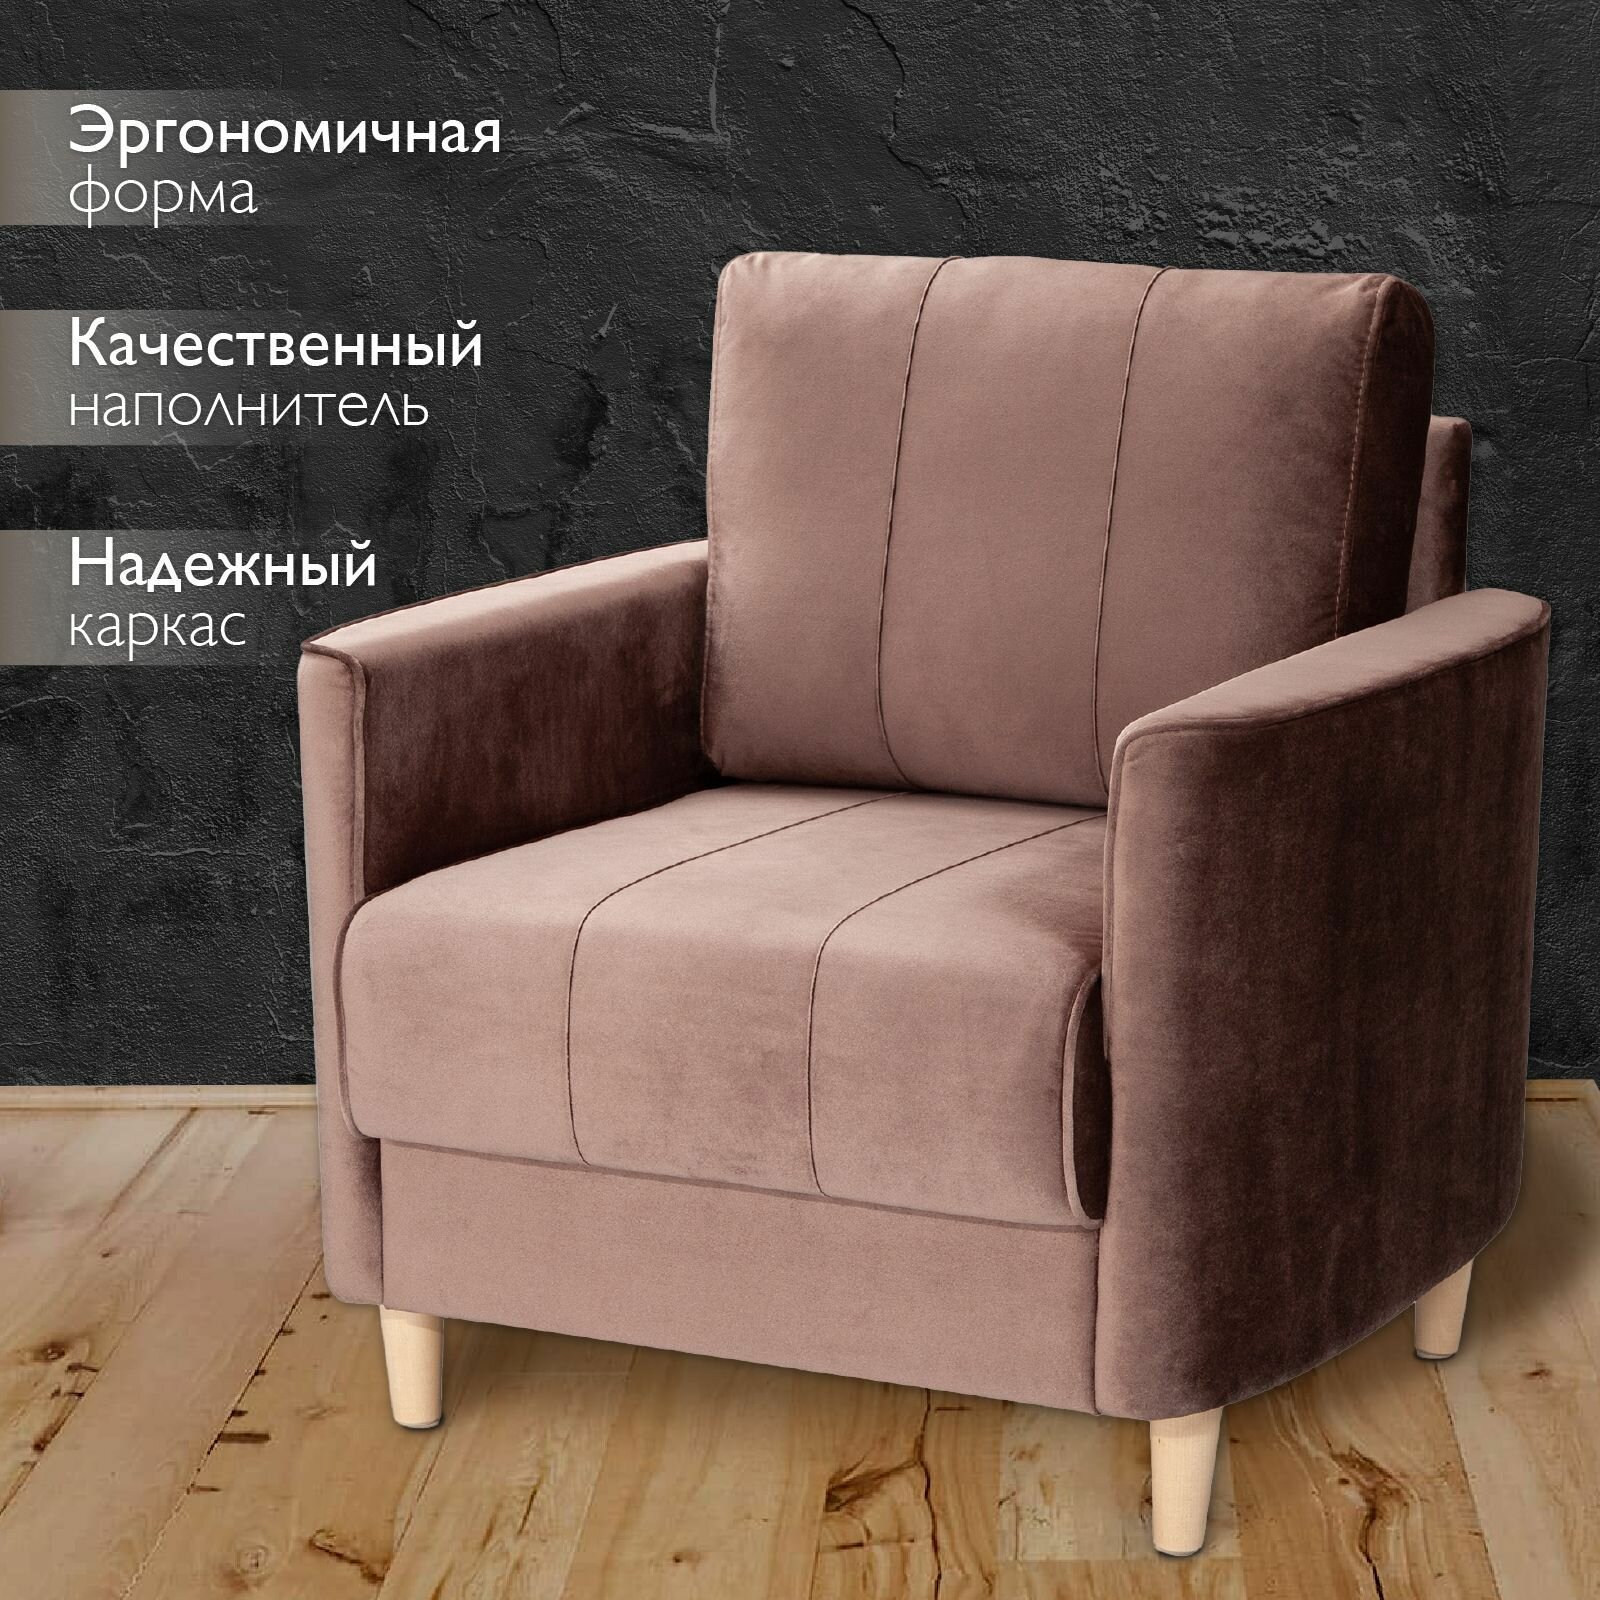 Кресло мягкое интерьерное для отдыха Марсель, на деревянных ножках, офисное кресло, для дома, гостиной, для дачи, на балкон, обивка бархат коричневый, Ами Мебель, Беларусь